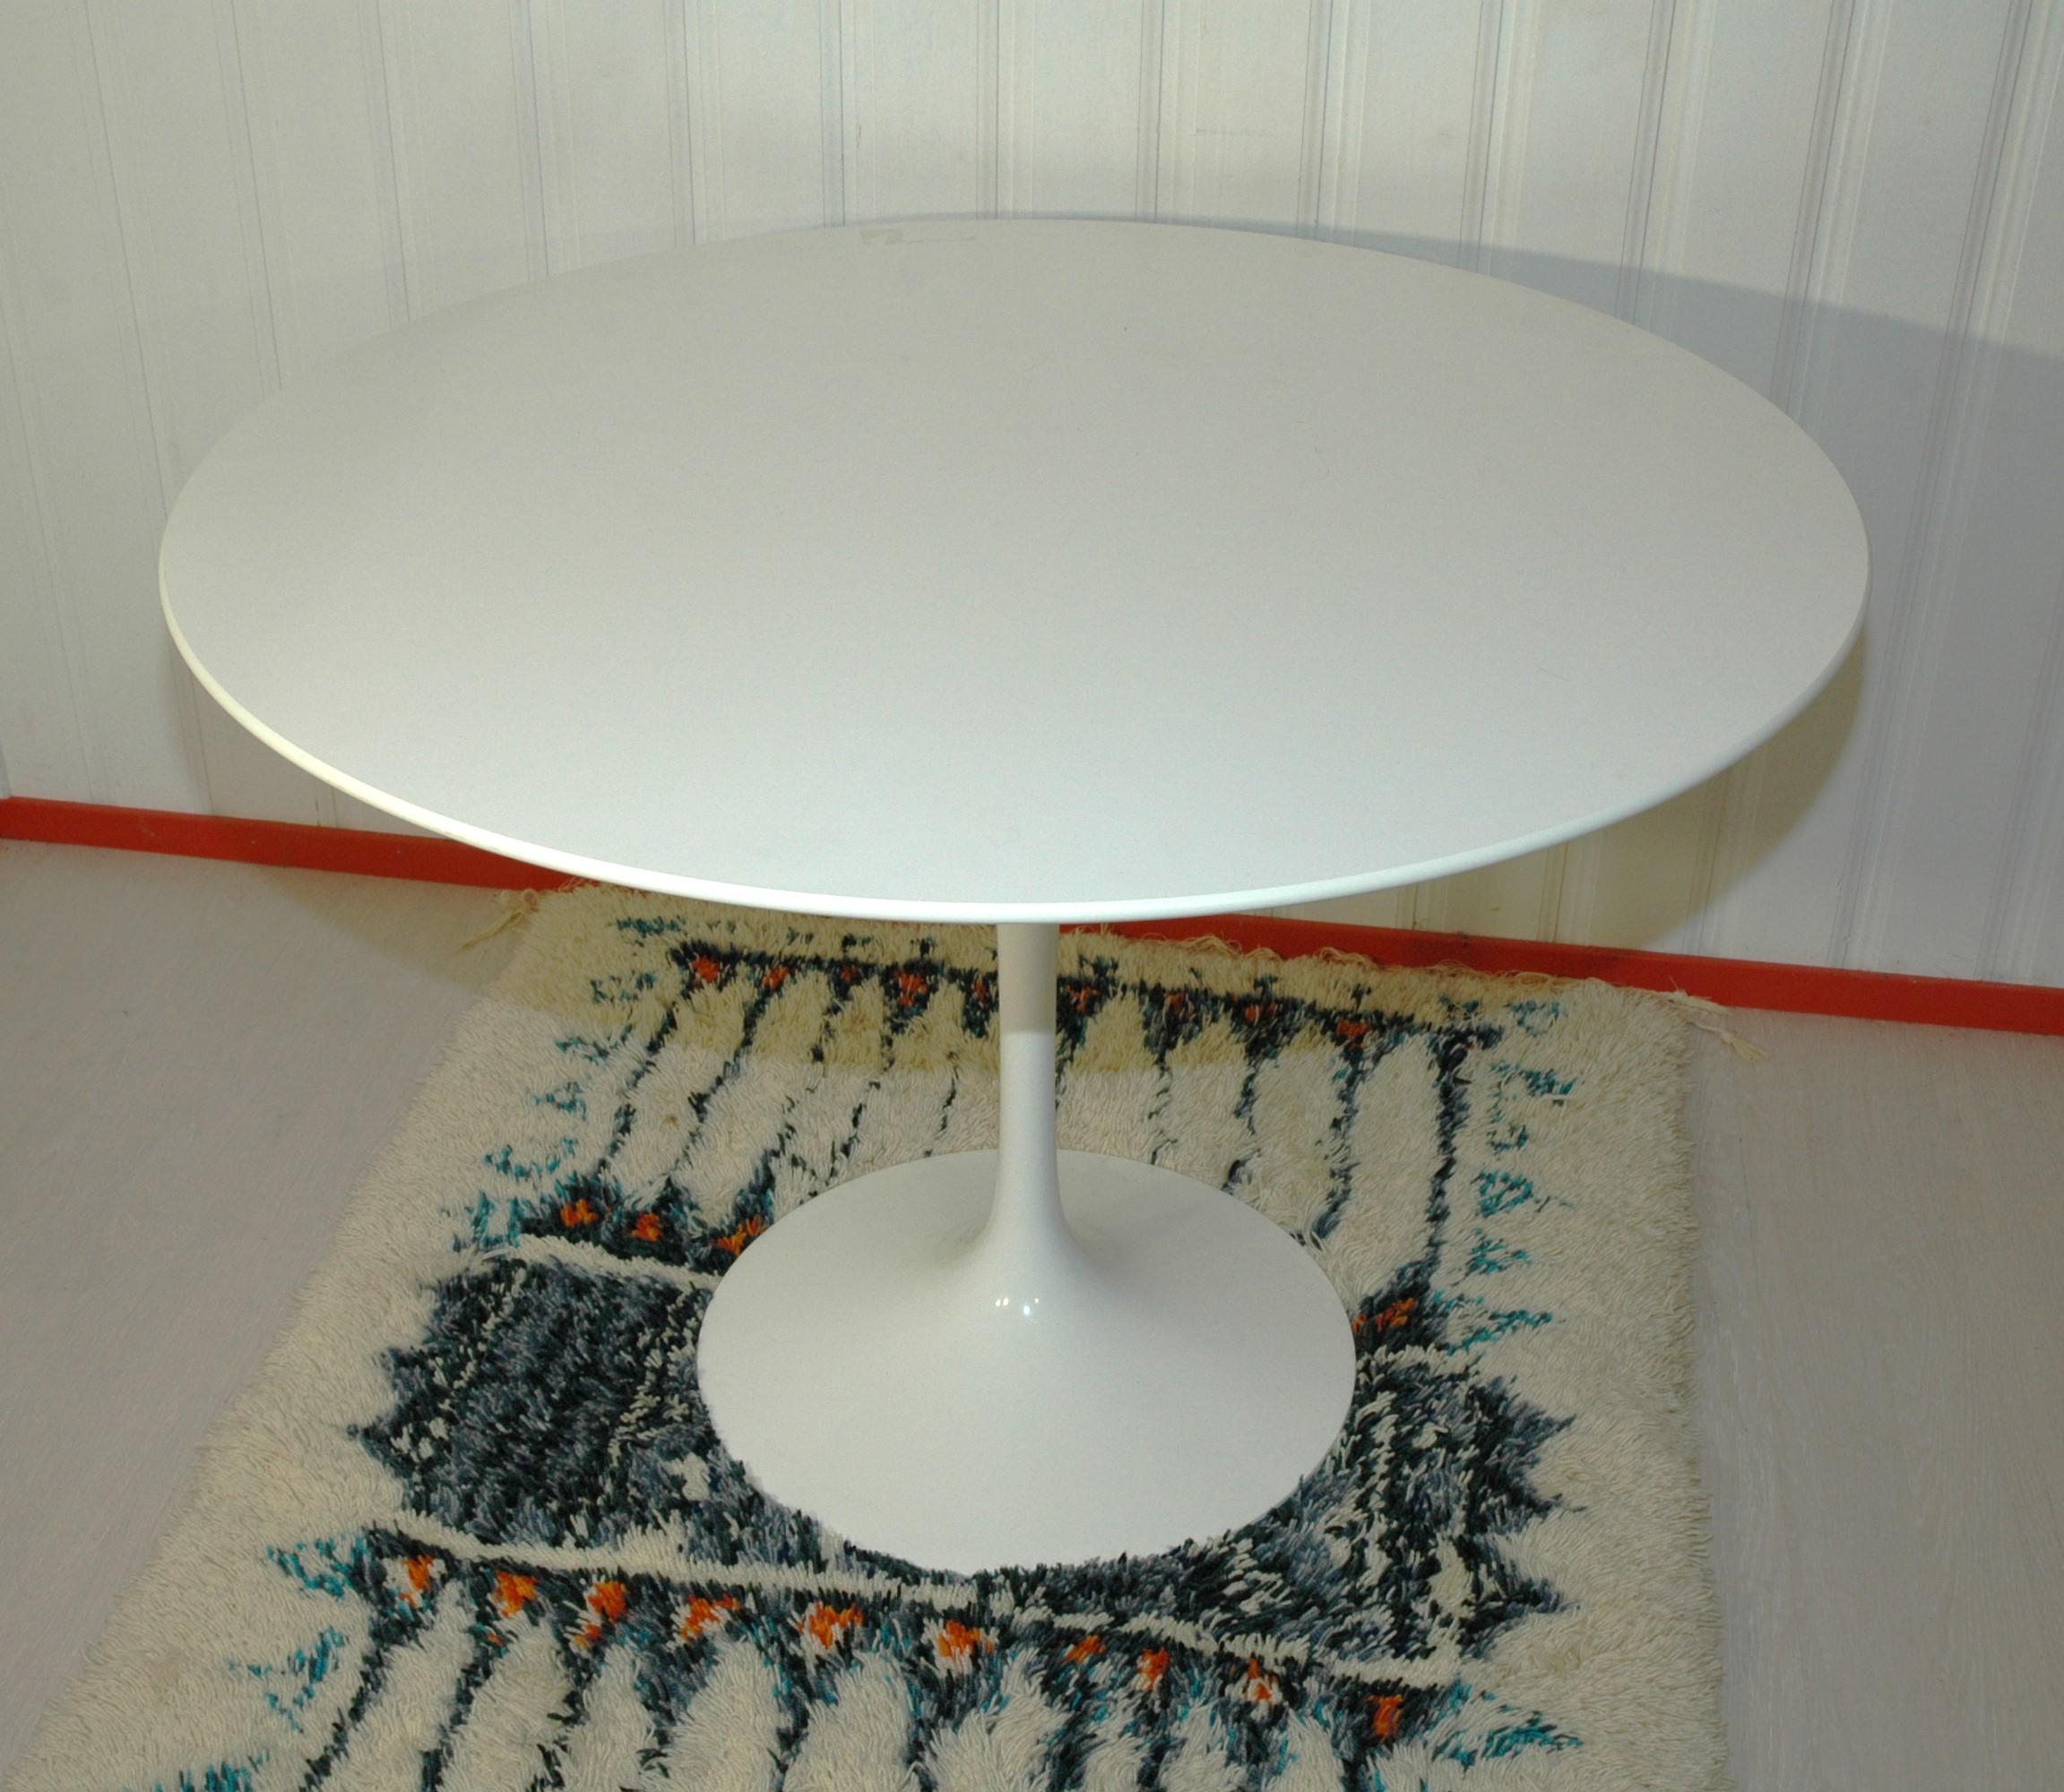 Eero Saarinen a vraiment réussi à créer le design magnifique et flexible de la table Tulip, qui est peut-être le plus solide des designs de table. Un design qui suit le même langage de conception que le fauteuil Executive et The Arch.

L'architecte